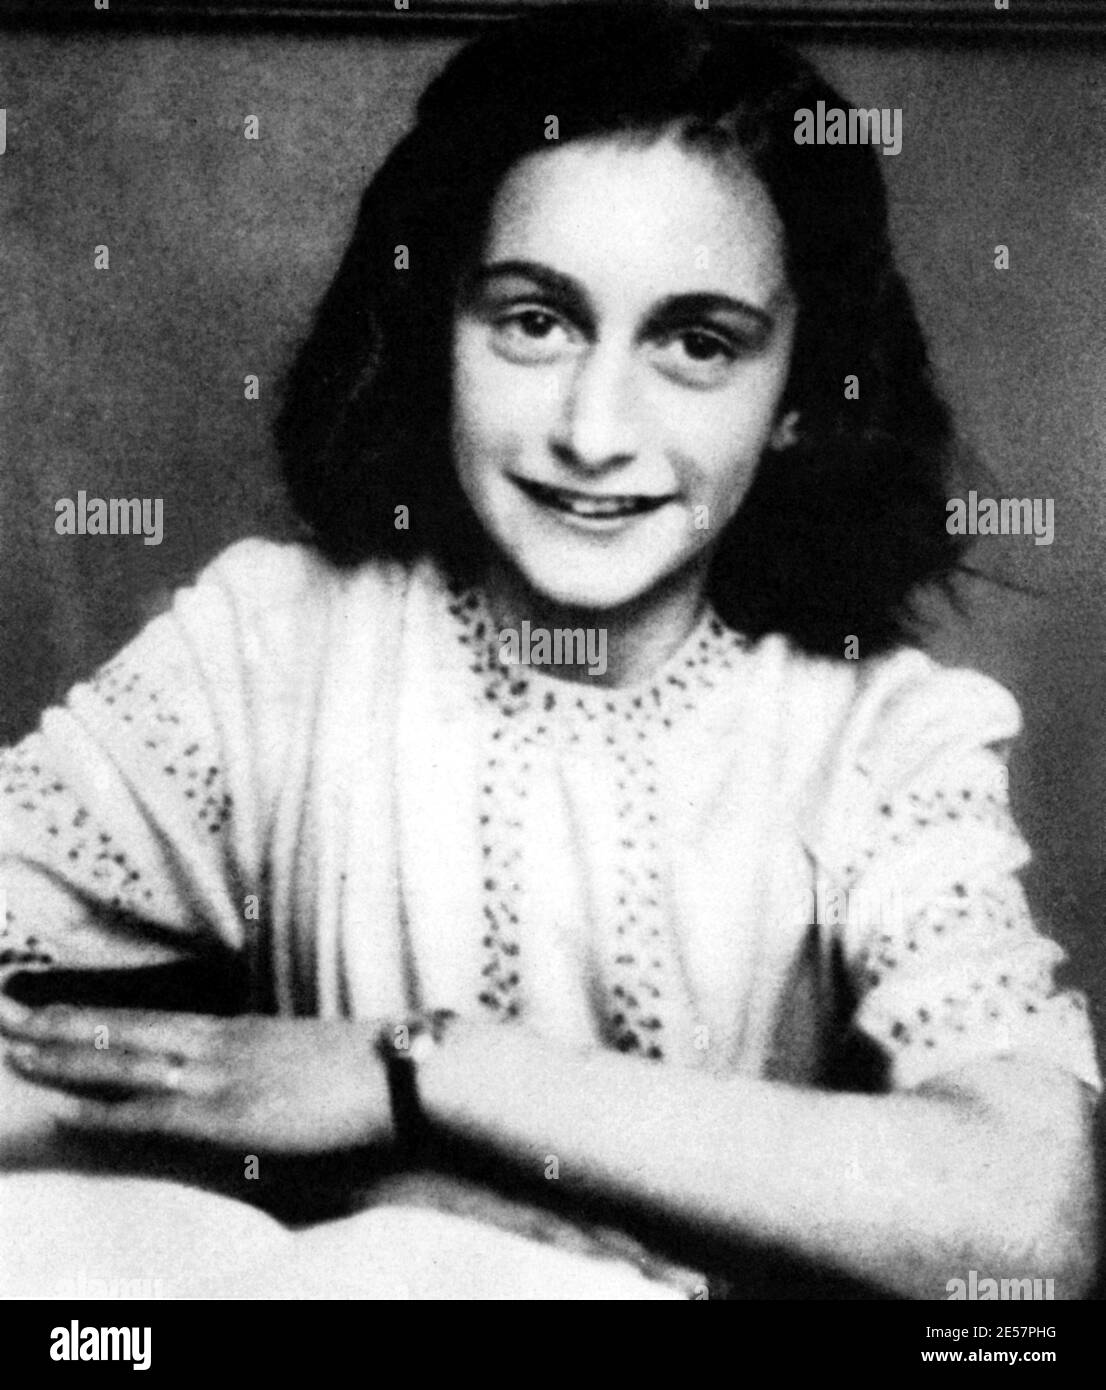 1941 , dicembre : IL giovane ebreo tedesco ANNE FRANK (1929 - 1945) di 12 anni a scuola , autore del ' Diario' pubblicato nel 1946 in tutto il mondo . Questa foto come una delle ultime foto scattate a Anne Frank , l' estate seguente , quando l' oppressione nazista peggiorò , I Franchi si nascondono - ANNA FRANK - ritratto - ritratto - rittrice - scrittore - Diario - diarista - diarista - memorialista - memorialista - LETTERATURA - LETTERATURA - rittrica - letterato - personalità bambino giovane - personalità da bambini - da giovani - WWII - seconda guerra mondiale - ebraismo Foto Stock